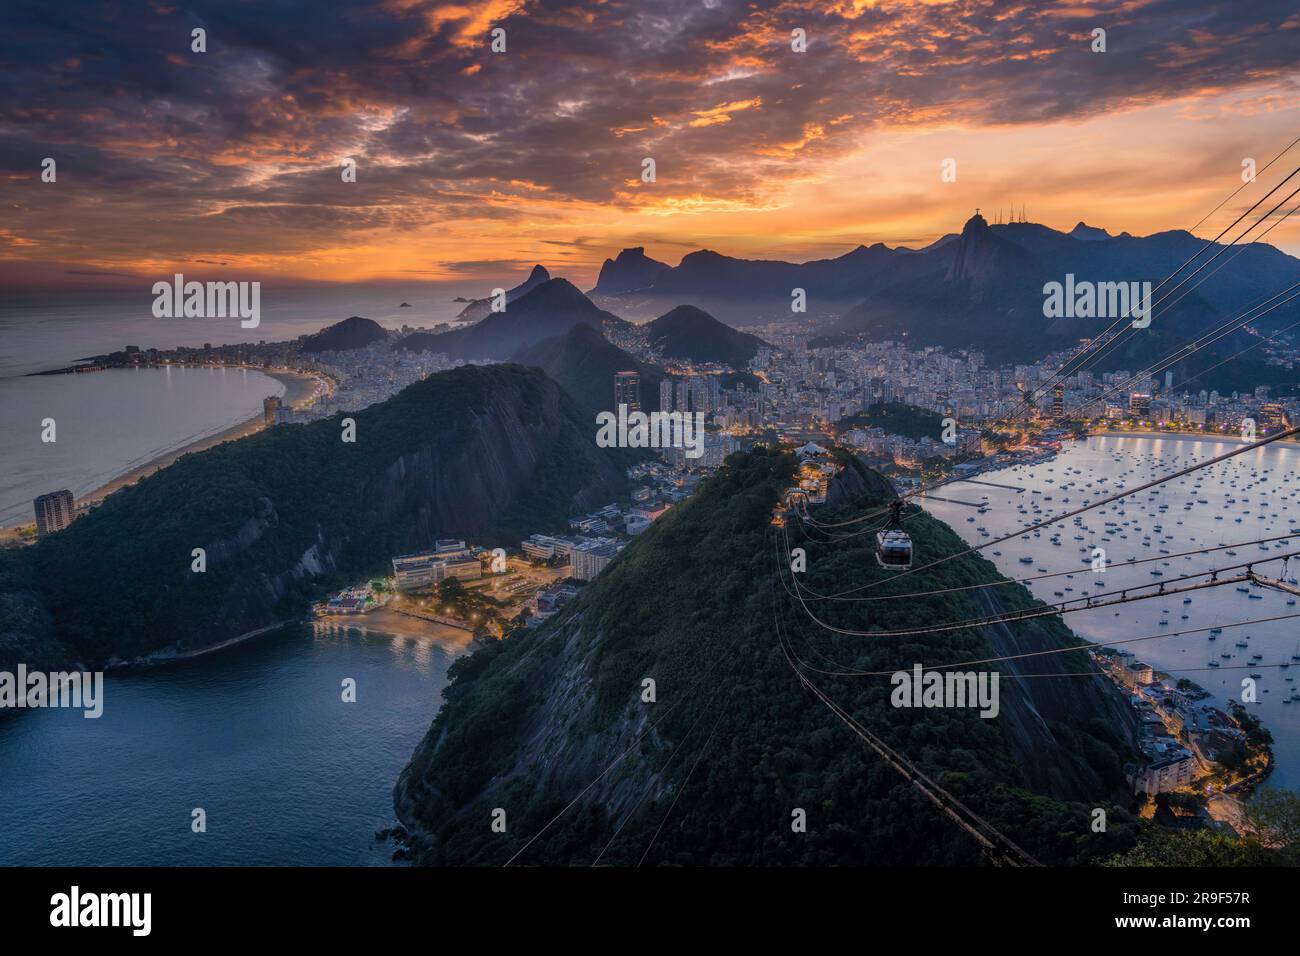 Dramatic sunset over Rio de Janeiro city, Brazil, South America. Stock Photo